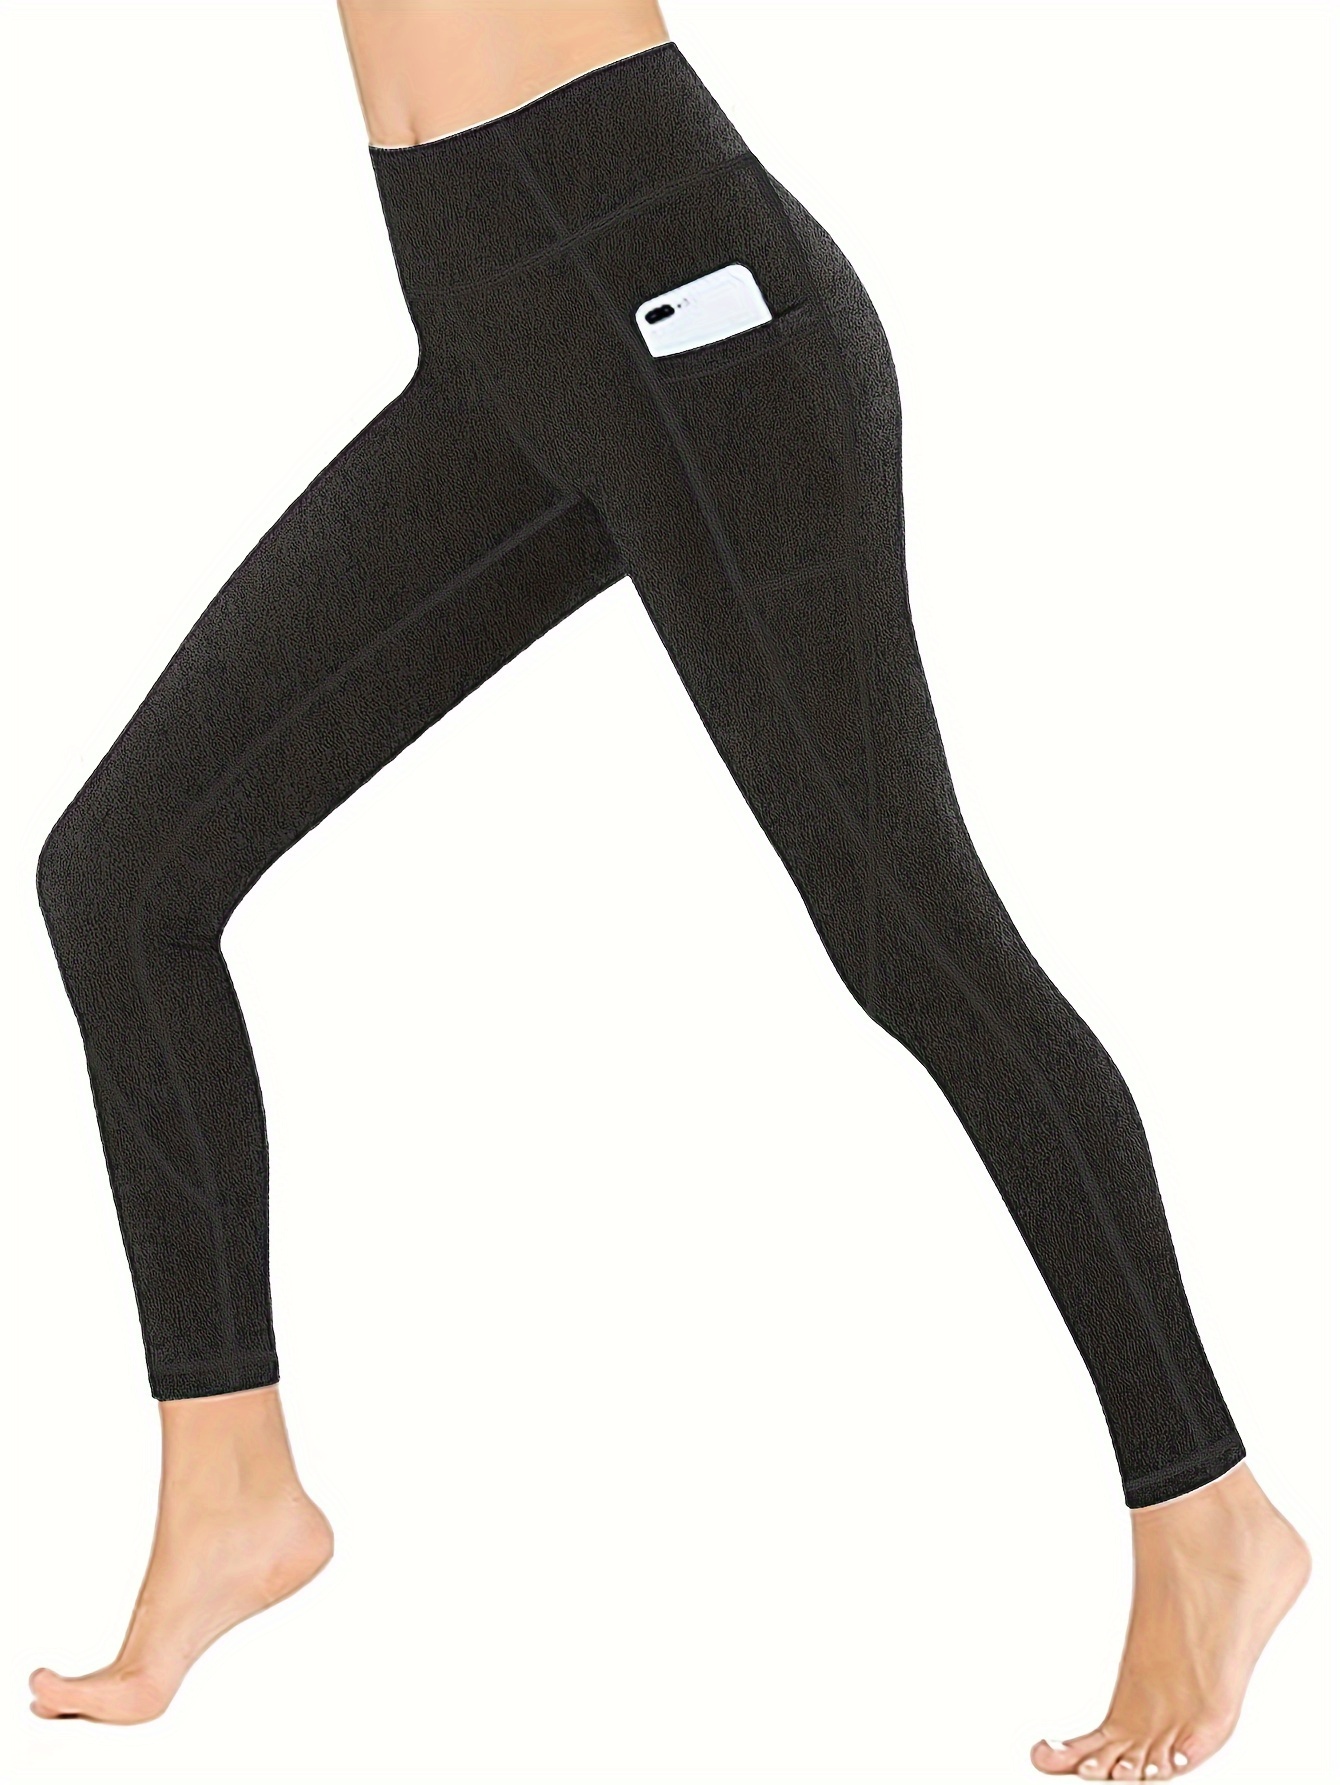 Buy Heathyoga Girls Leggings with Pockets Girls Yoga Pants